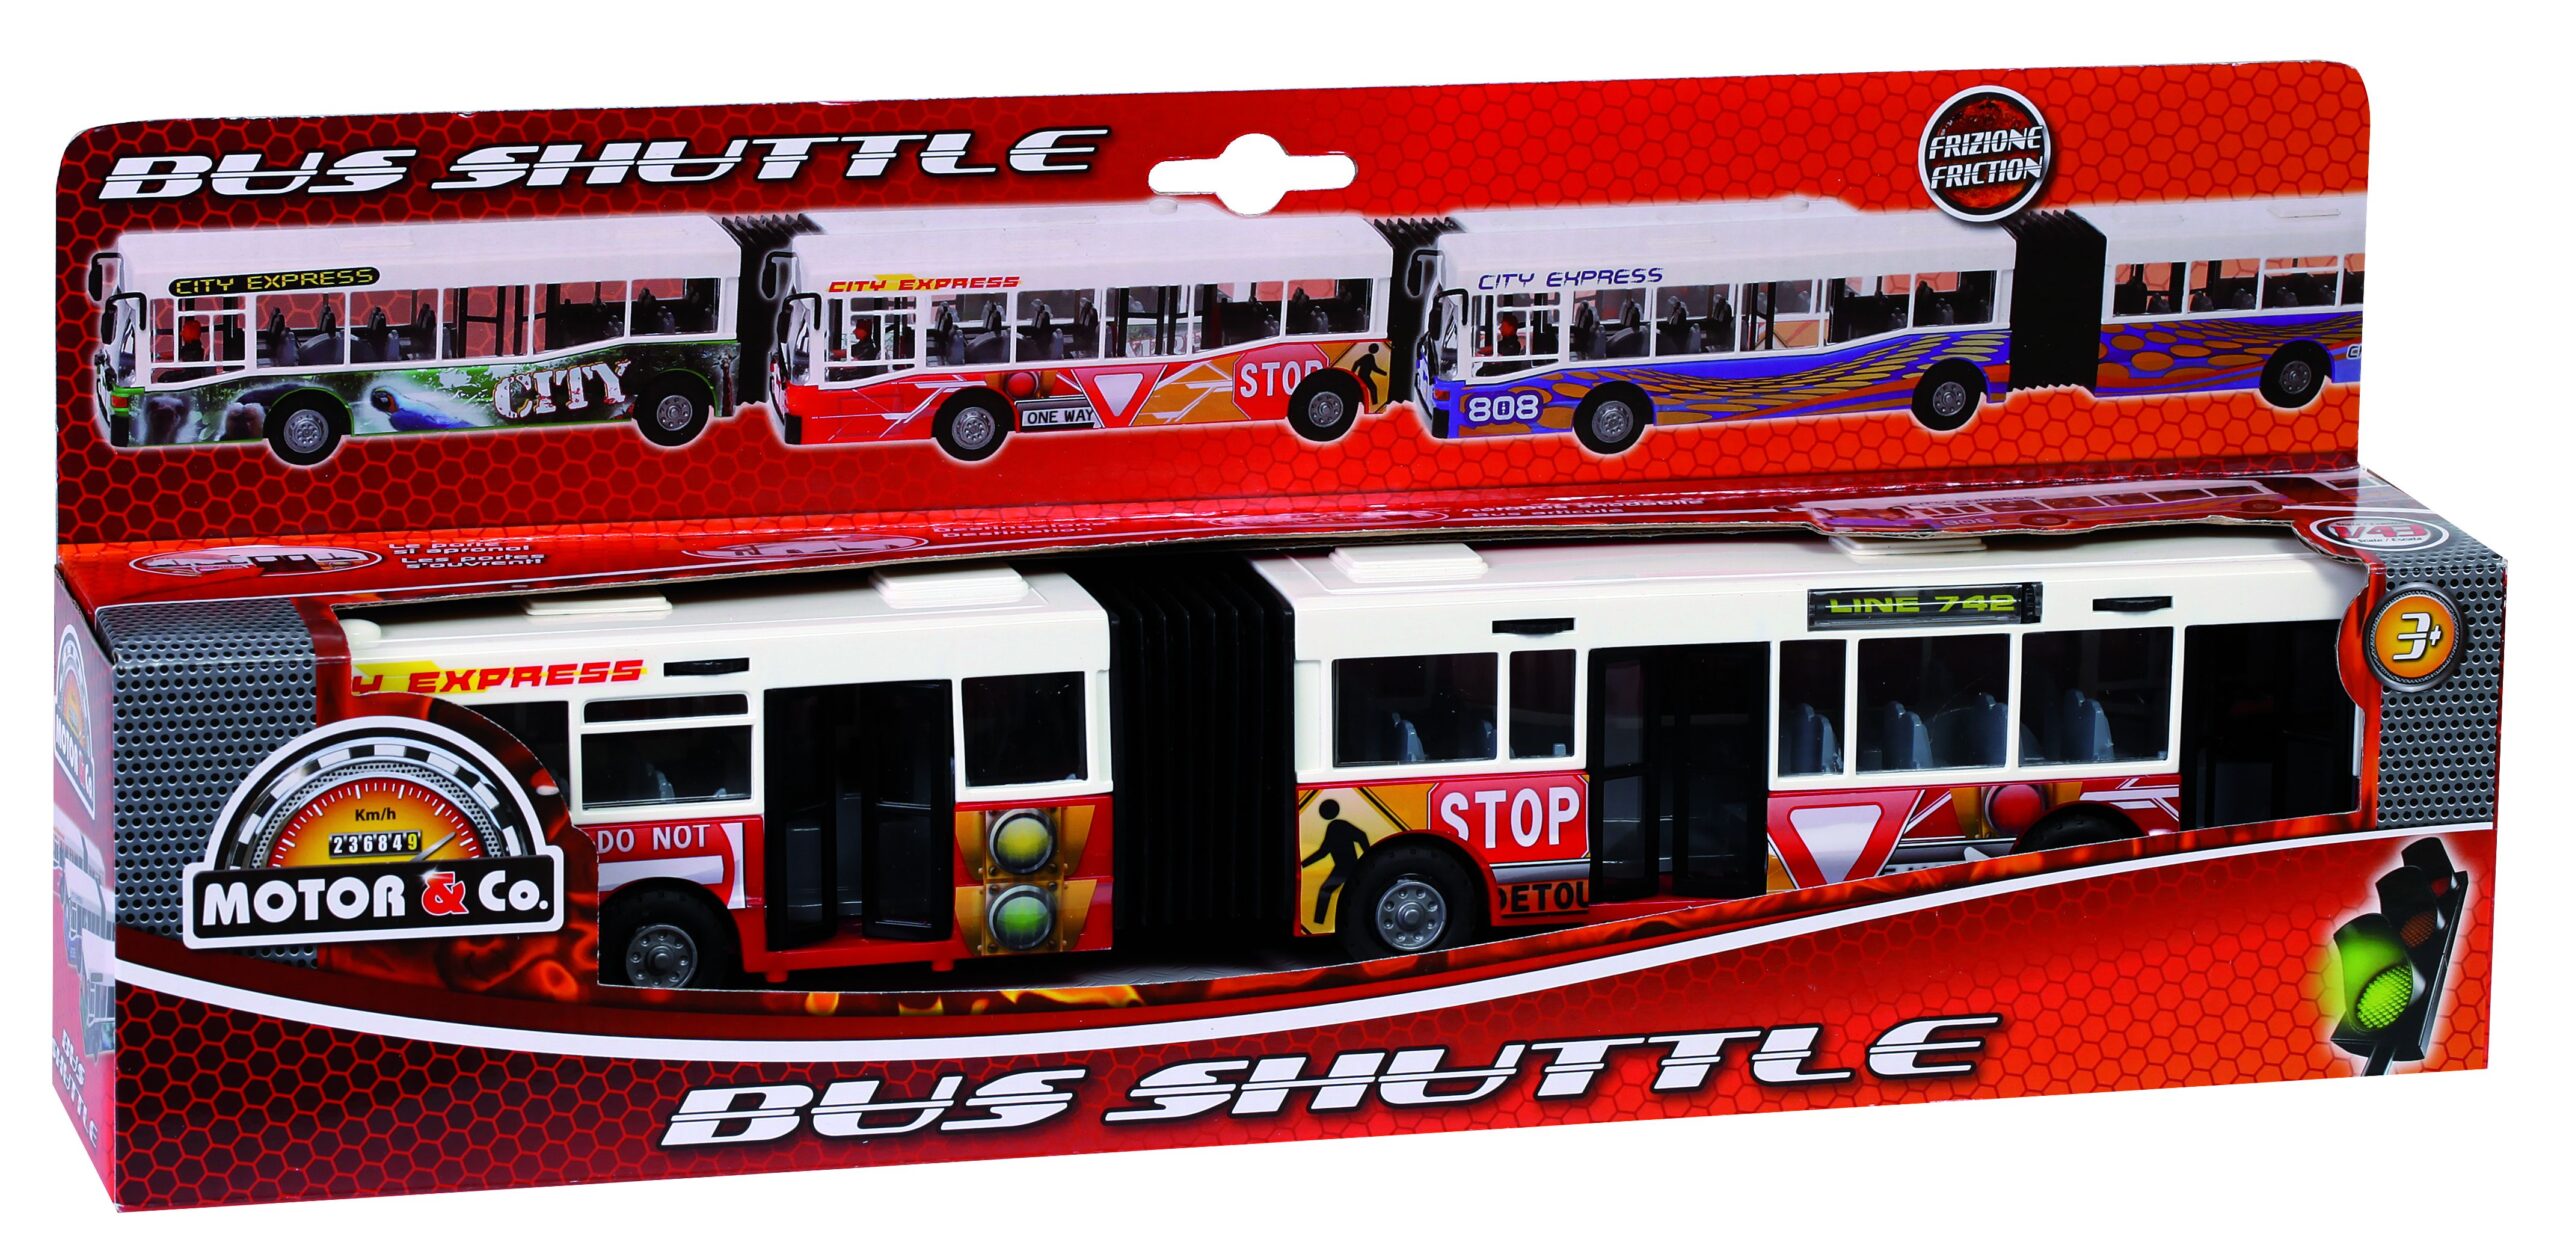 Motor&co bus shuttle - MOTOR & CO.